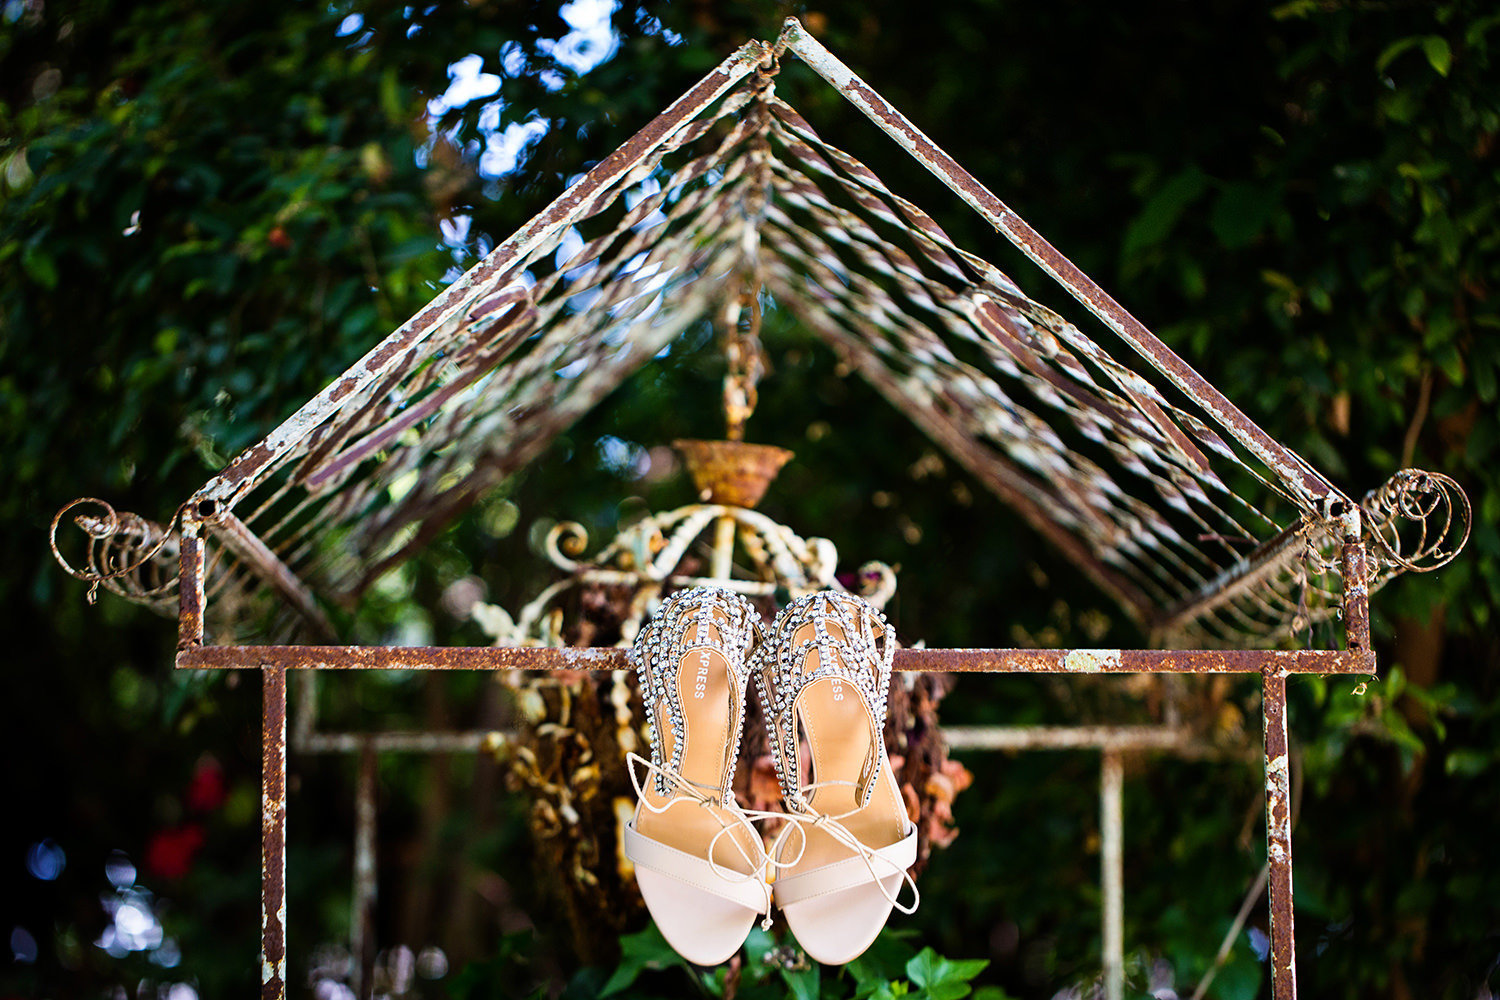 Creative wedding shoe detail shot in a garden setting